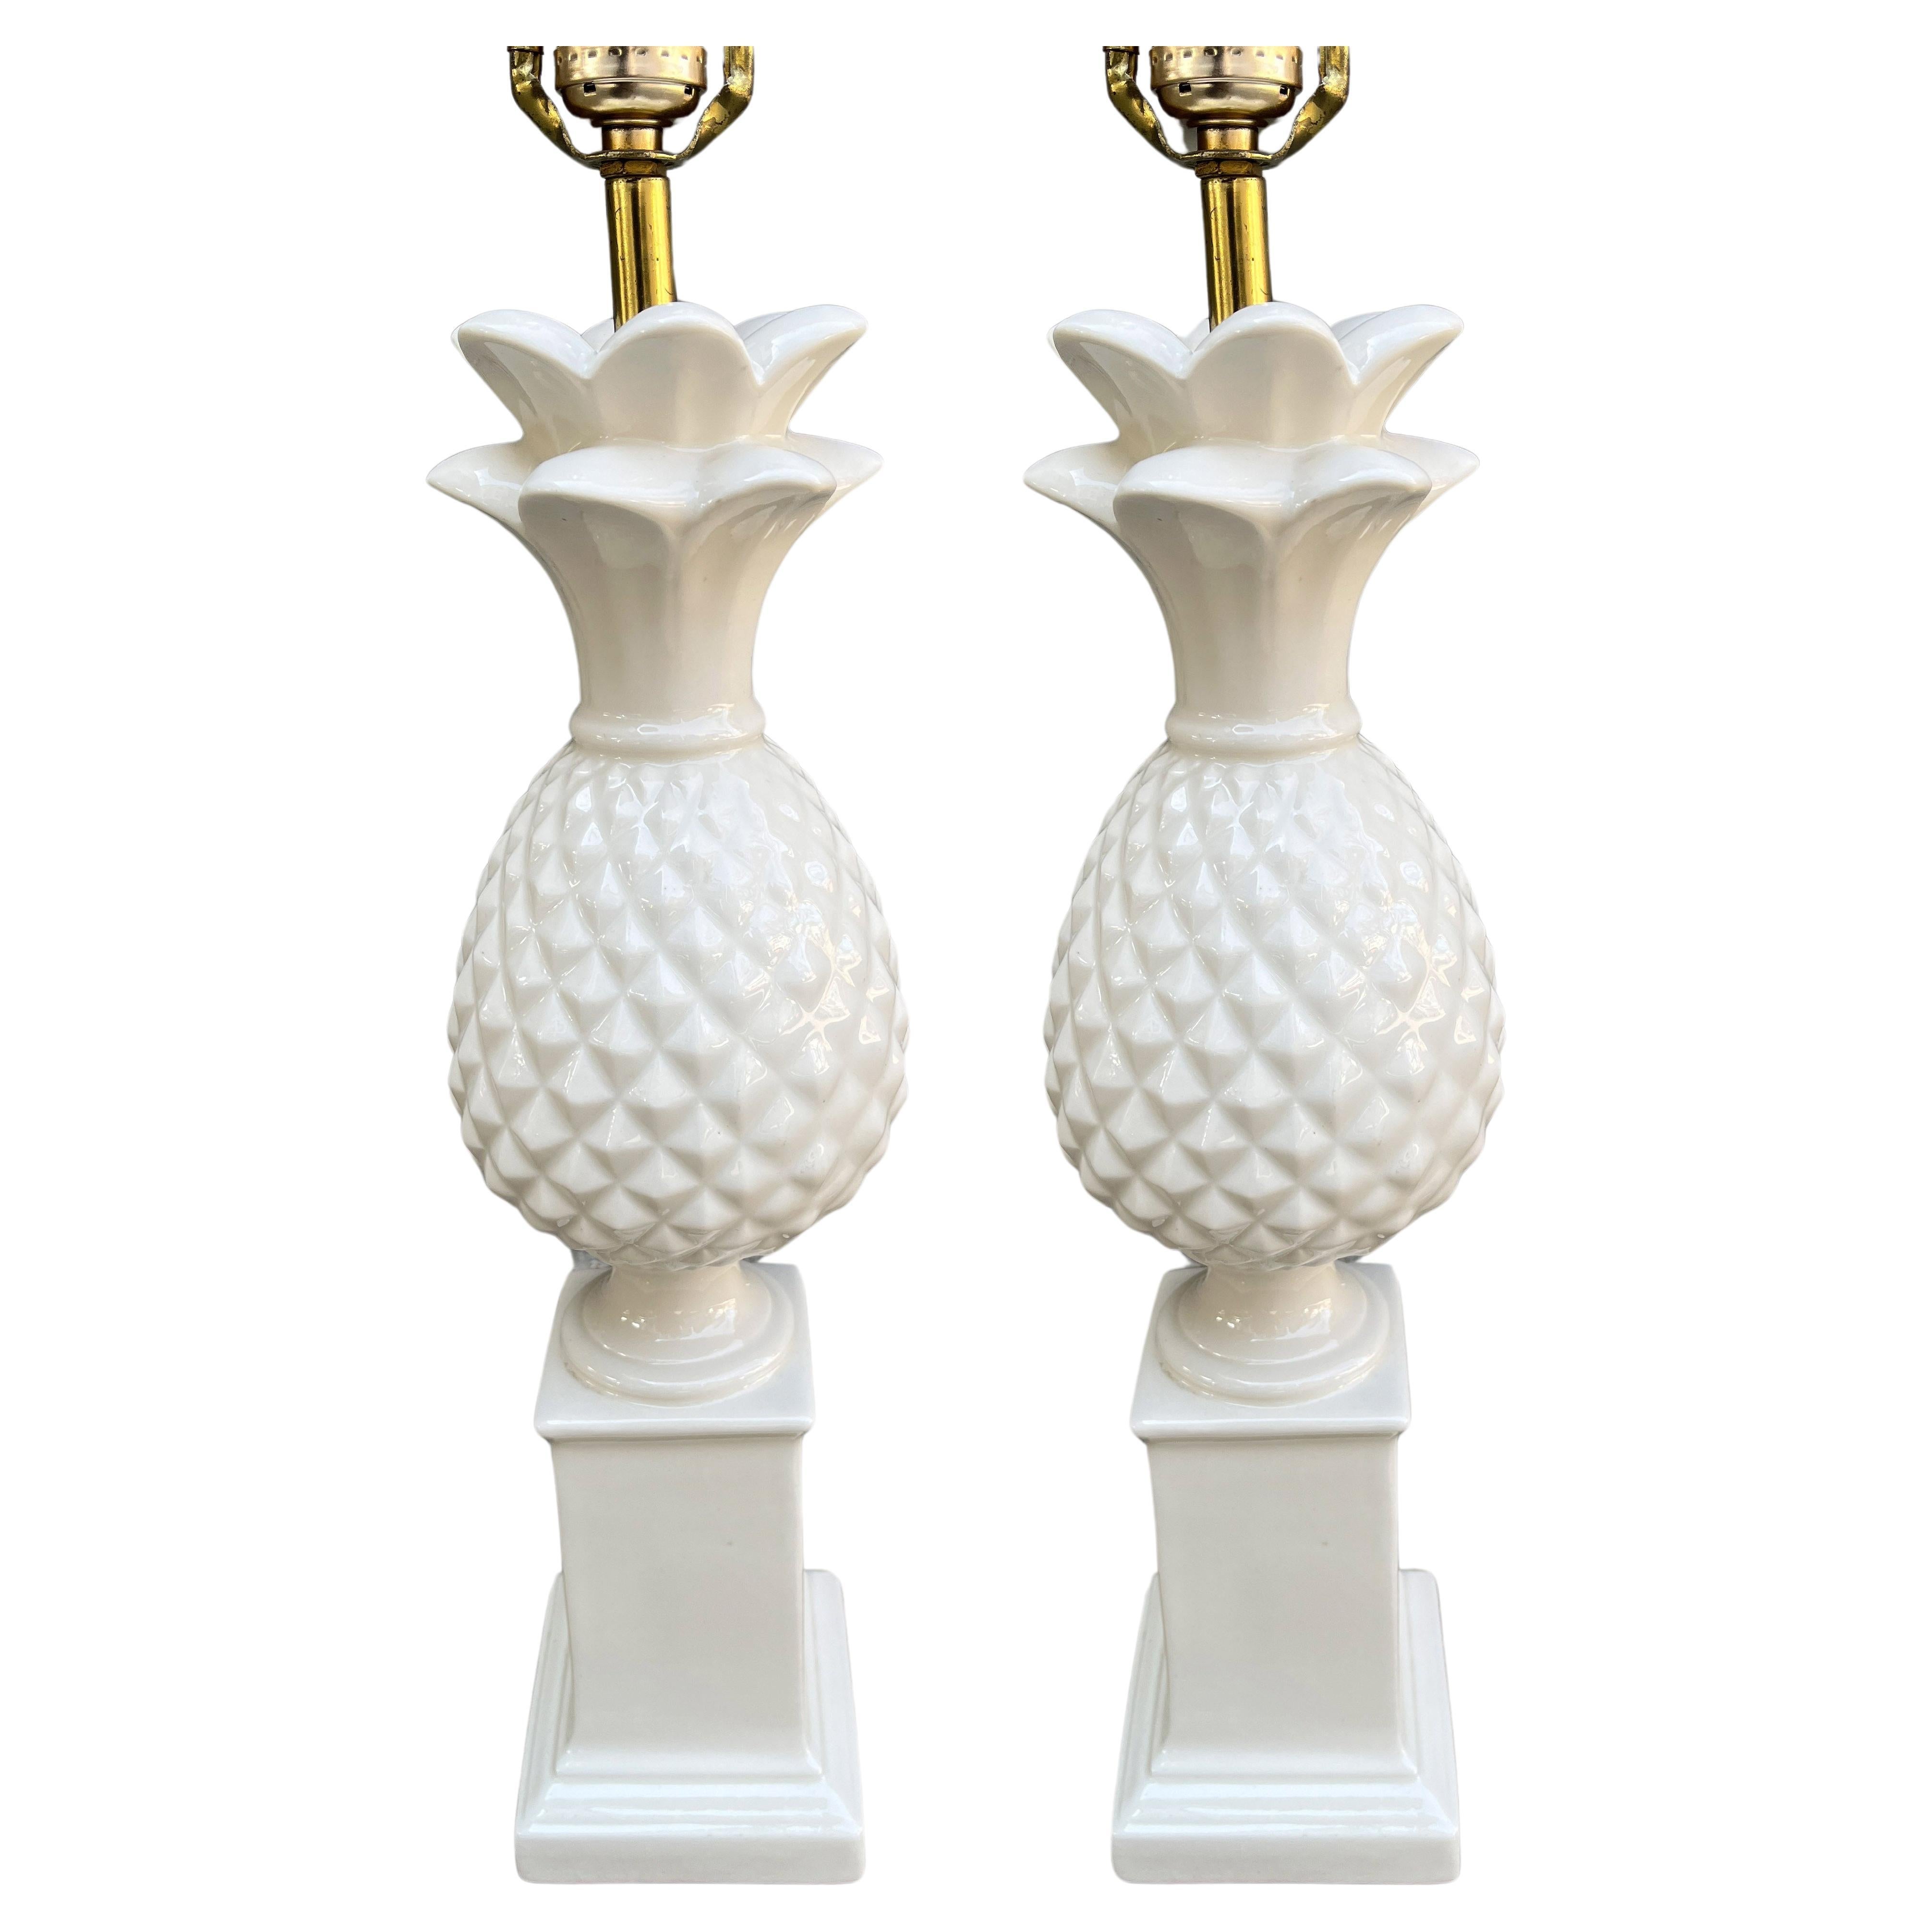 Paar weiße Keramik-Ananaslampen aus den 1970er Jahren